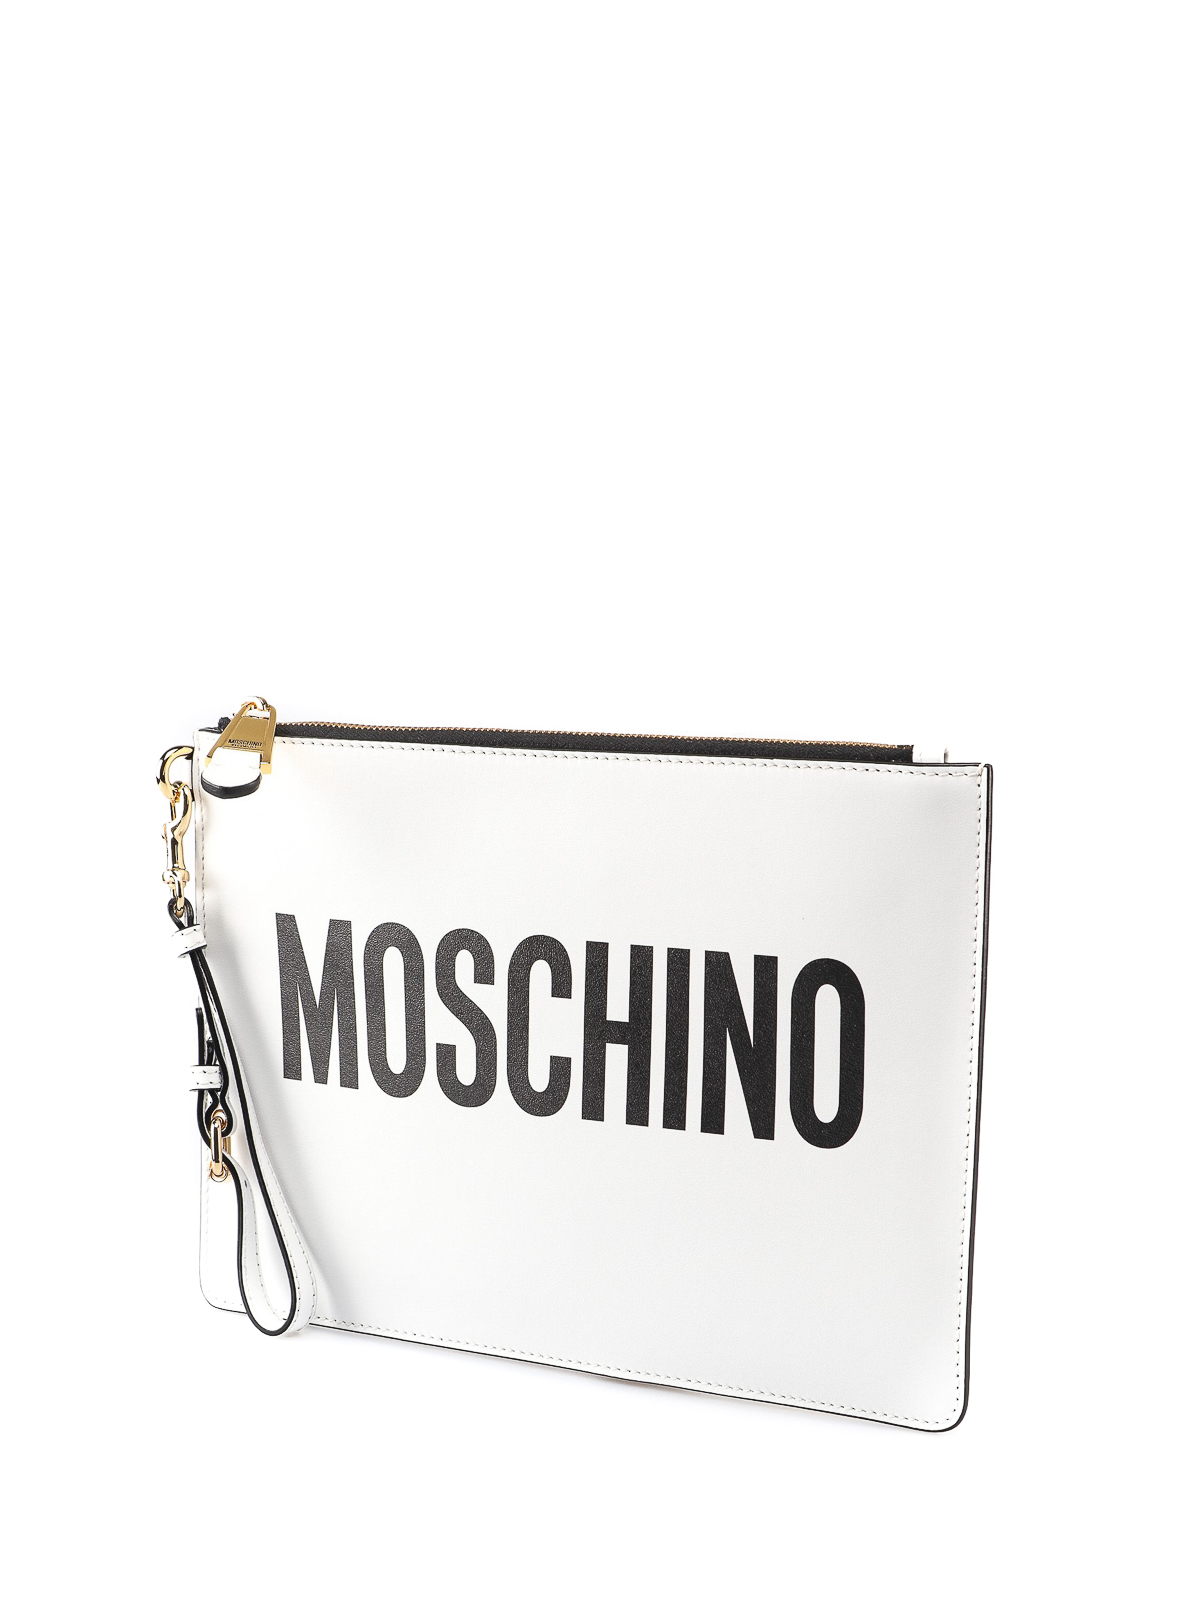 クラッチバッグ Moschino - クラッチバッグ - 白 - 840580011001